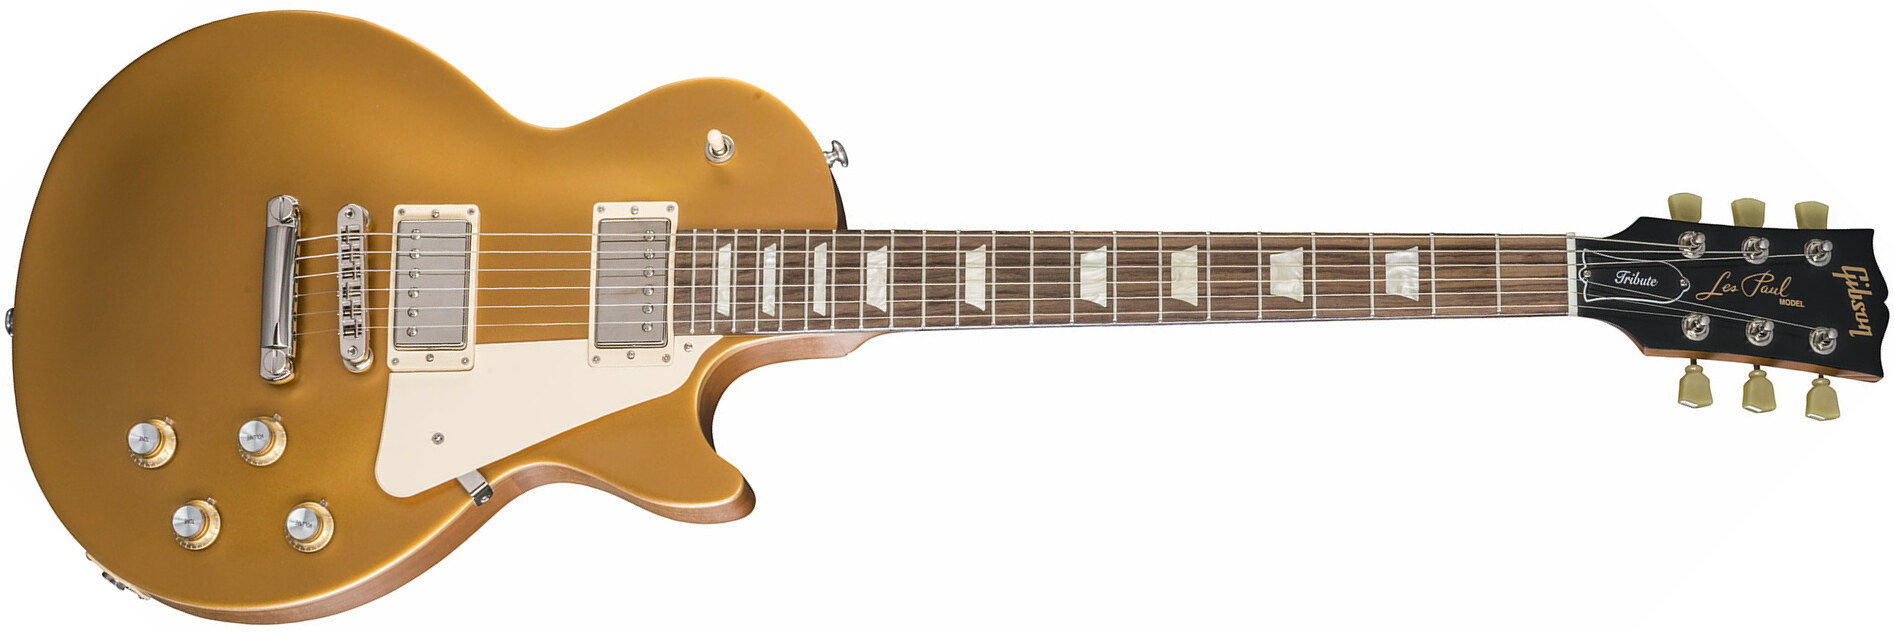 Gibson Les Paul Tribute 2018 - Satin Gold Top - Guitare Électrique Single Cut - Main picture